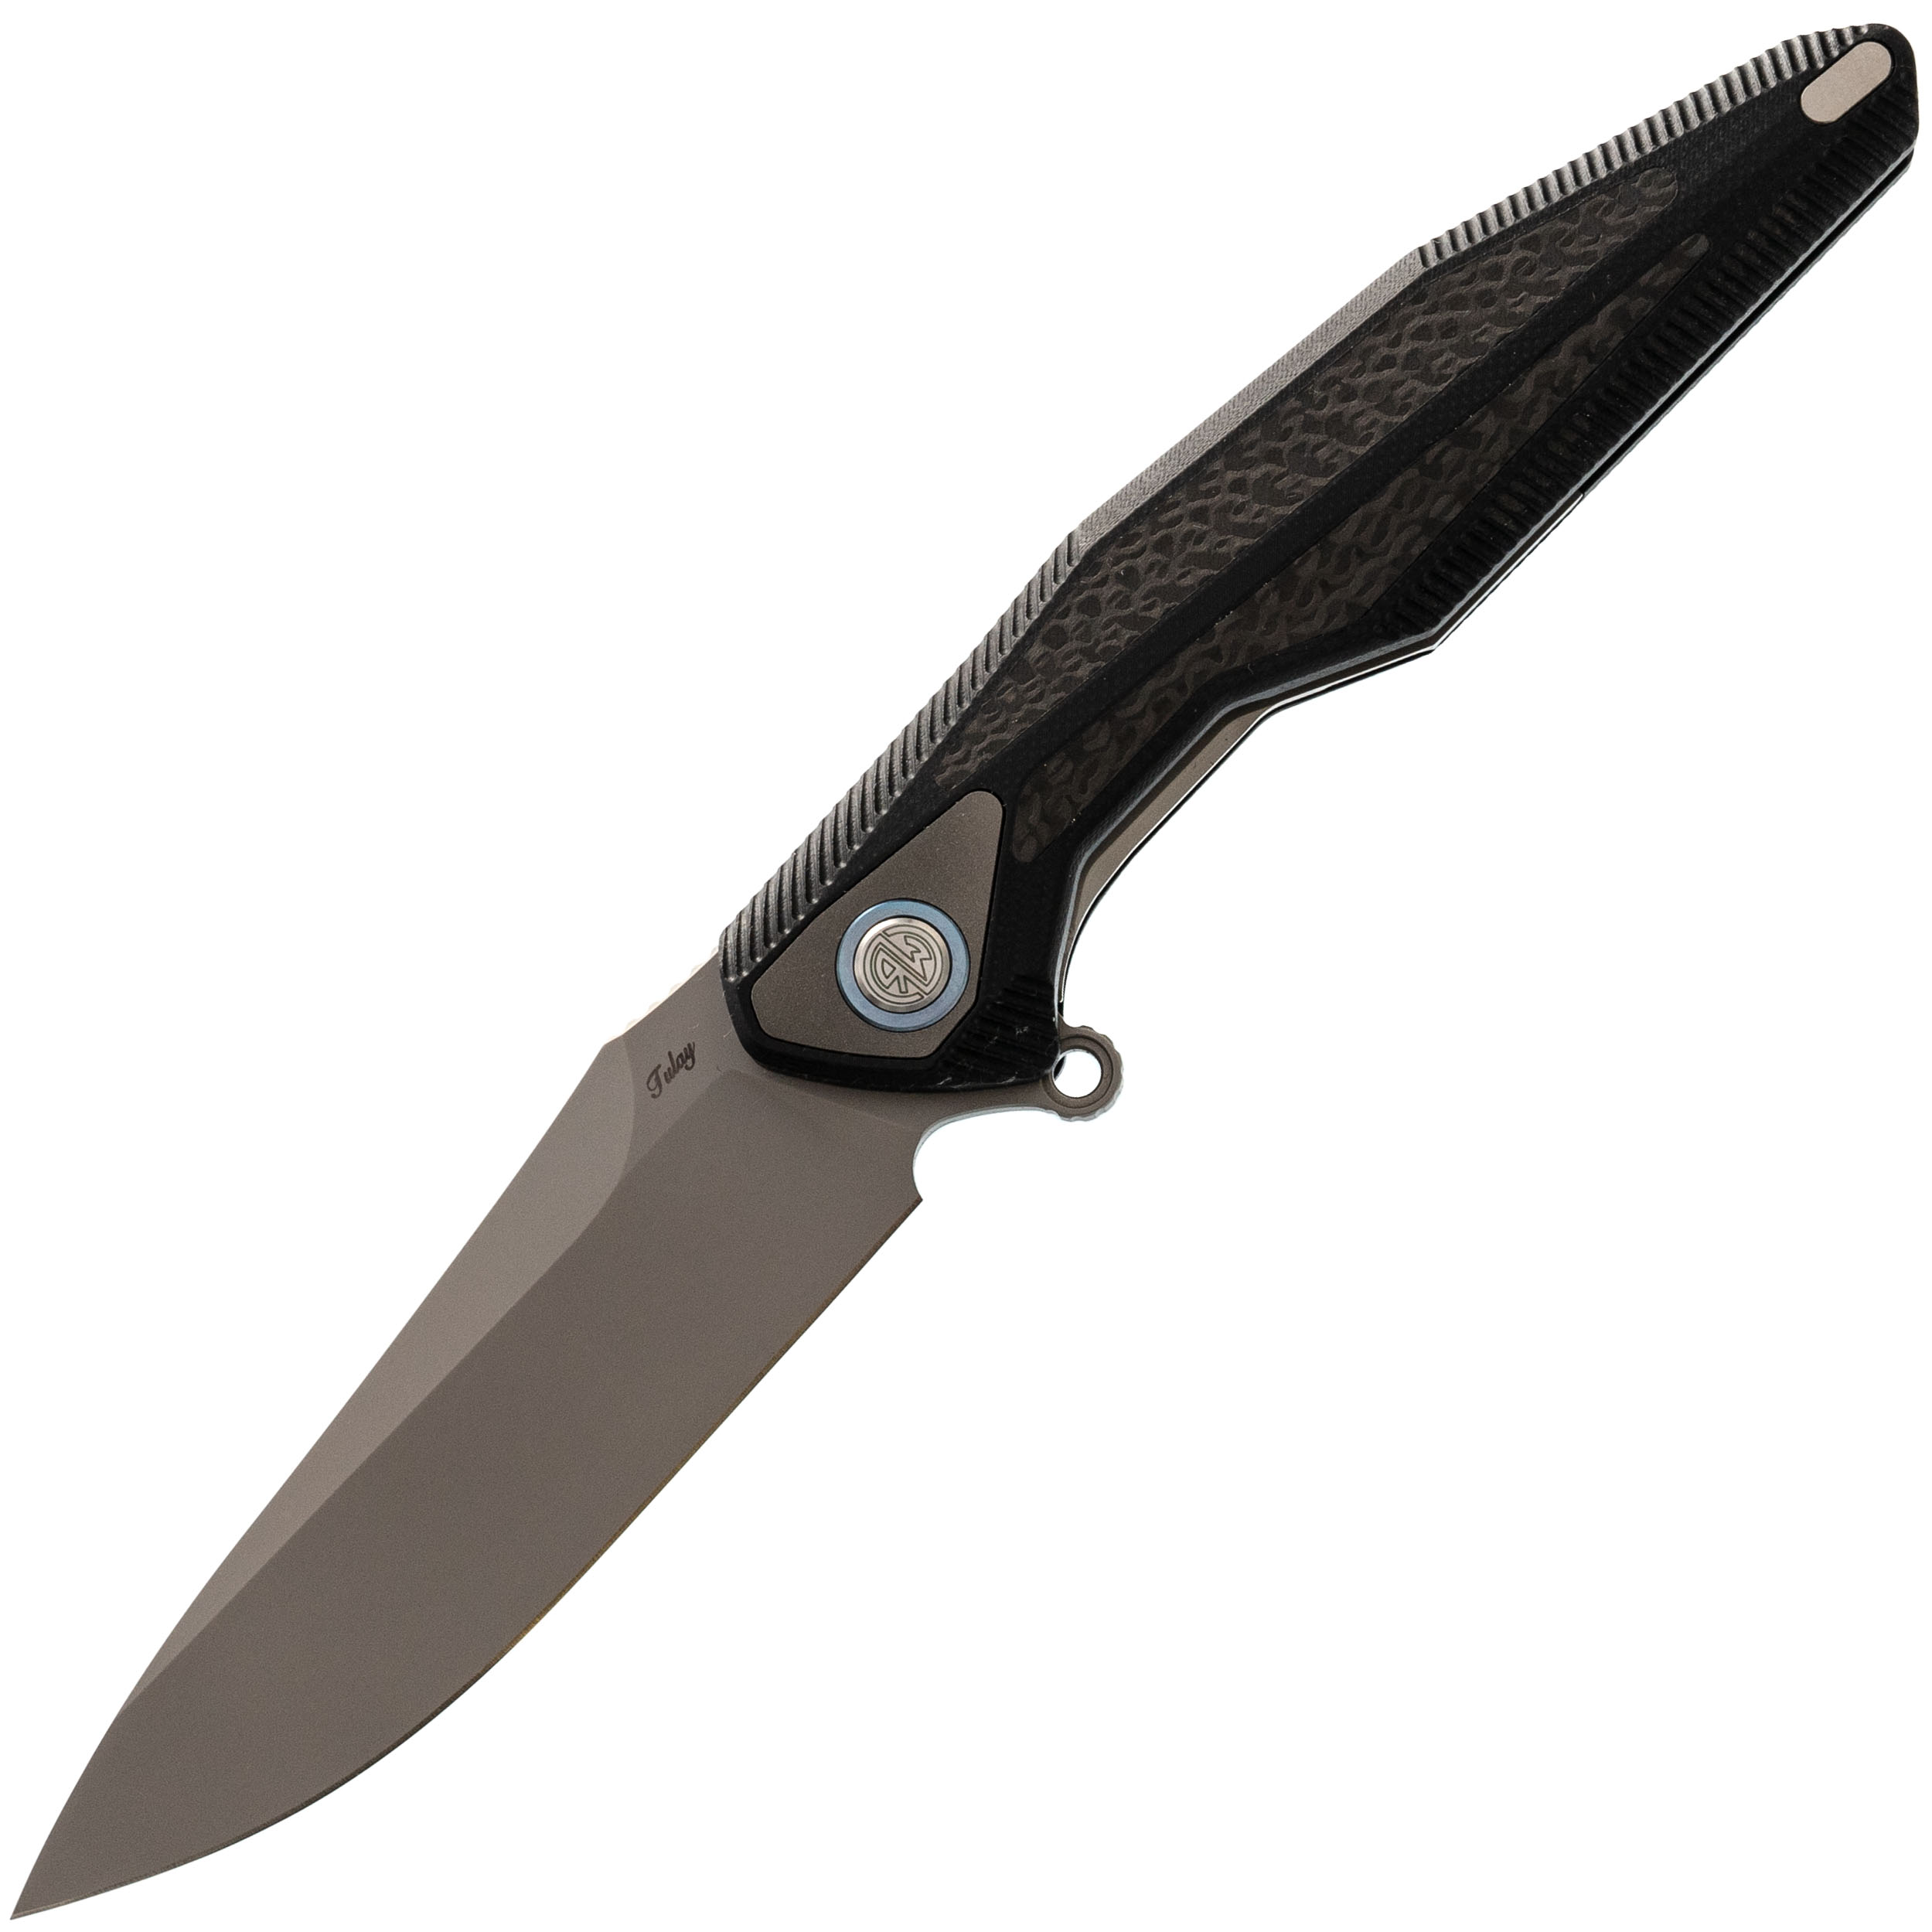 Нож складной Tulay Rikeknife, сталь 154CM, Black G10/Carbon Fiber складной нож we knife esprit marble carbon cpm 20cv